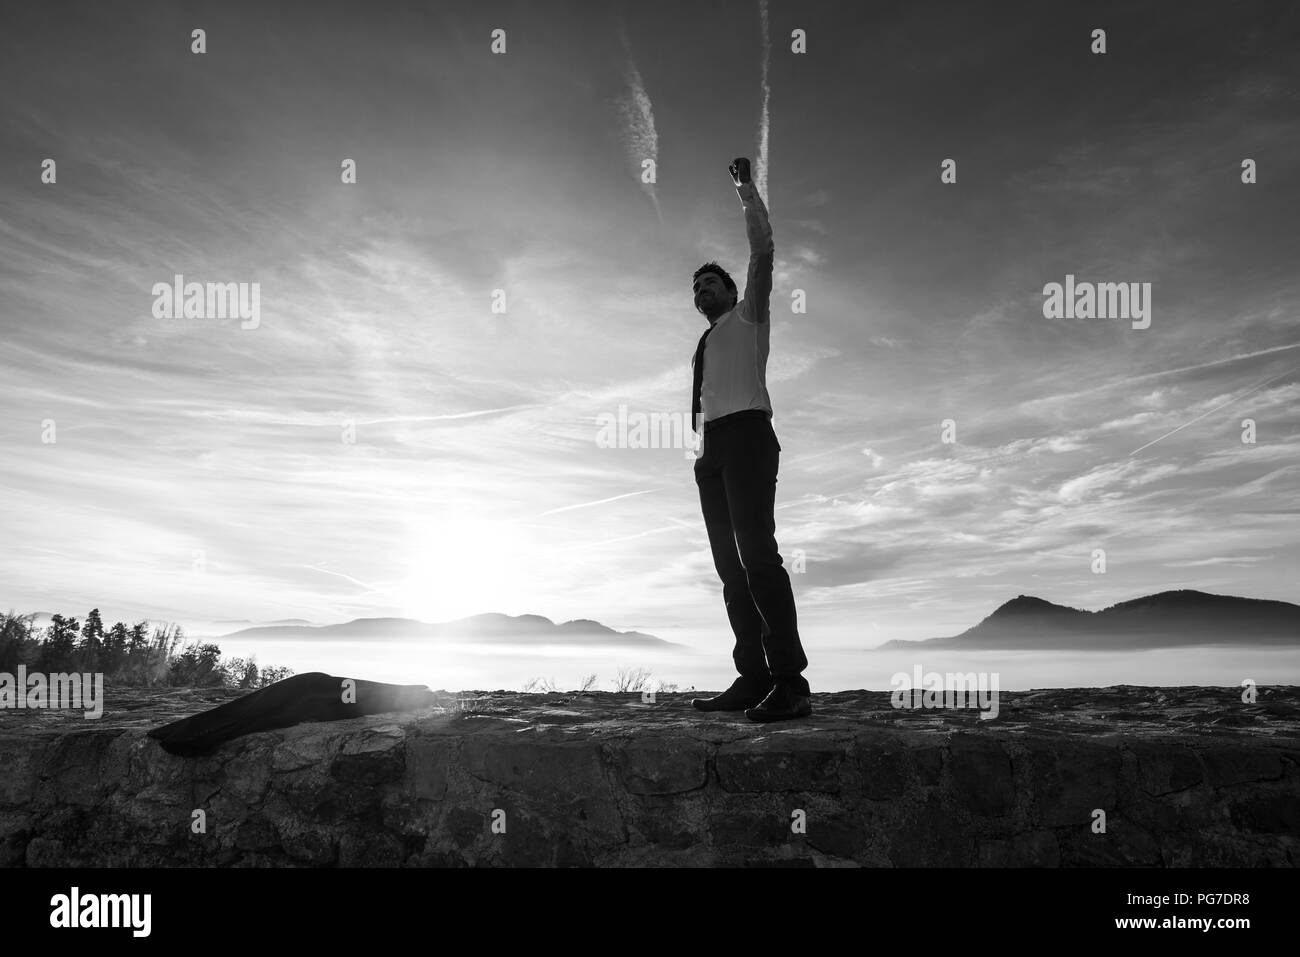 Geschäftsmann Holding aloft seine Faust bei Sonnenaufgang seinen Erfolg und Erfolg feiern, als er auf eine Mauer mit Misty Mountain Szene steht eine Silhouette Stockfoto